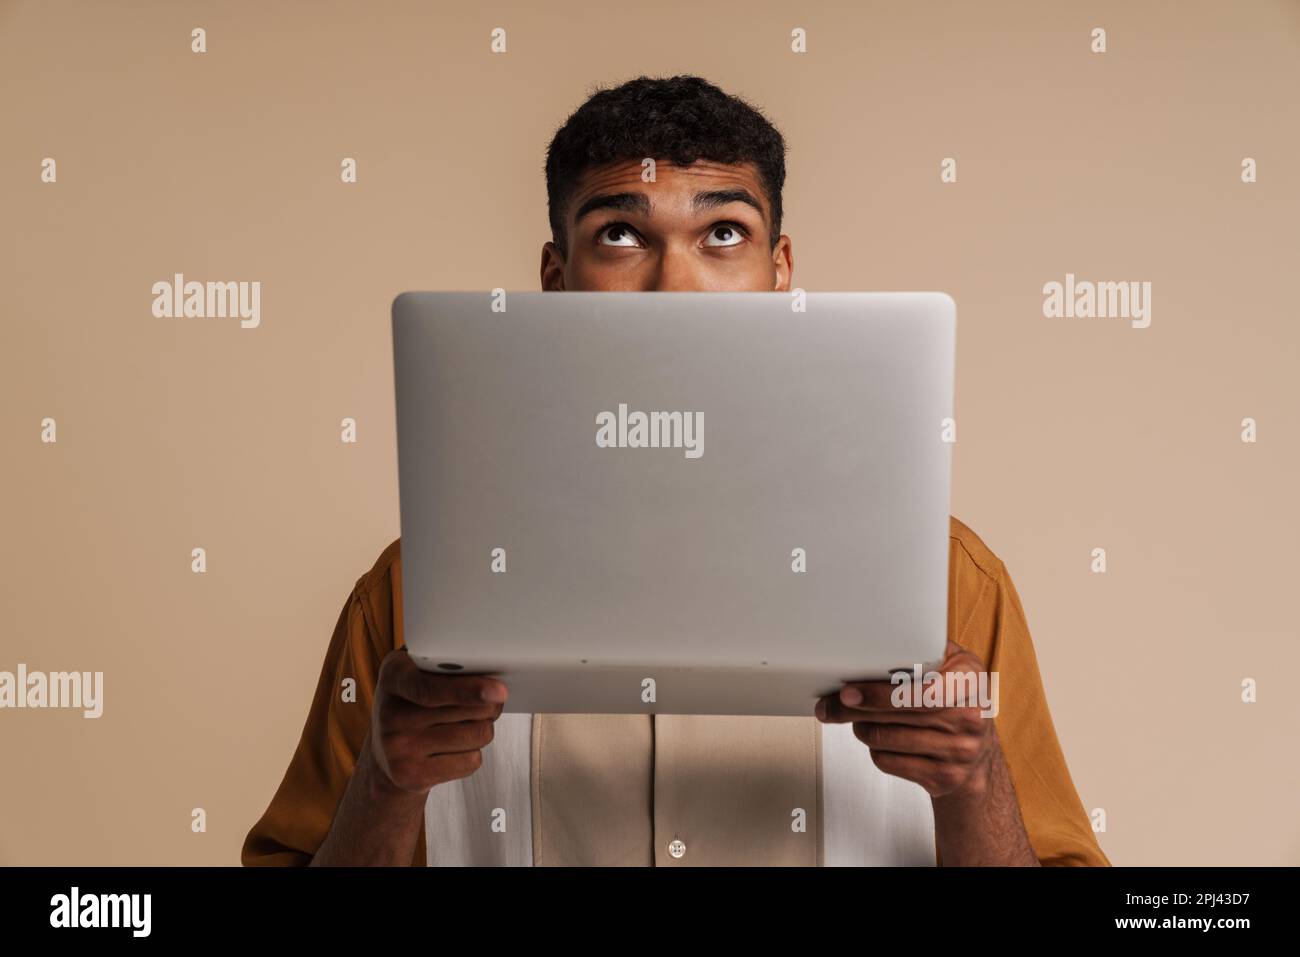 Ein junger, gutaussehender afrikaner, der hinter einem Laptop nach oben blickte, während er über einem isolierten beigen Hintergrund stand Stockfoto